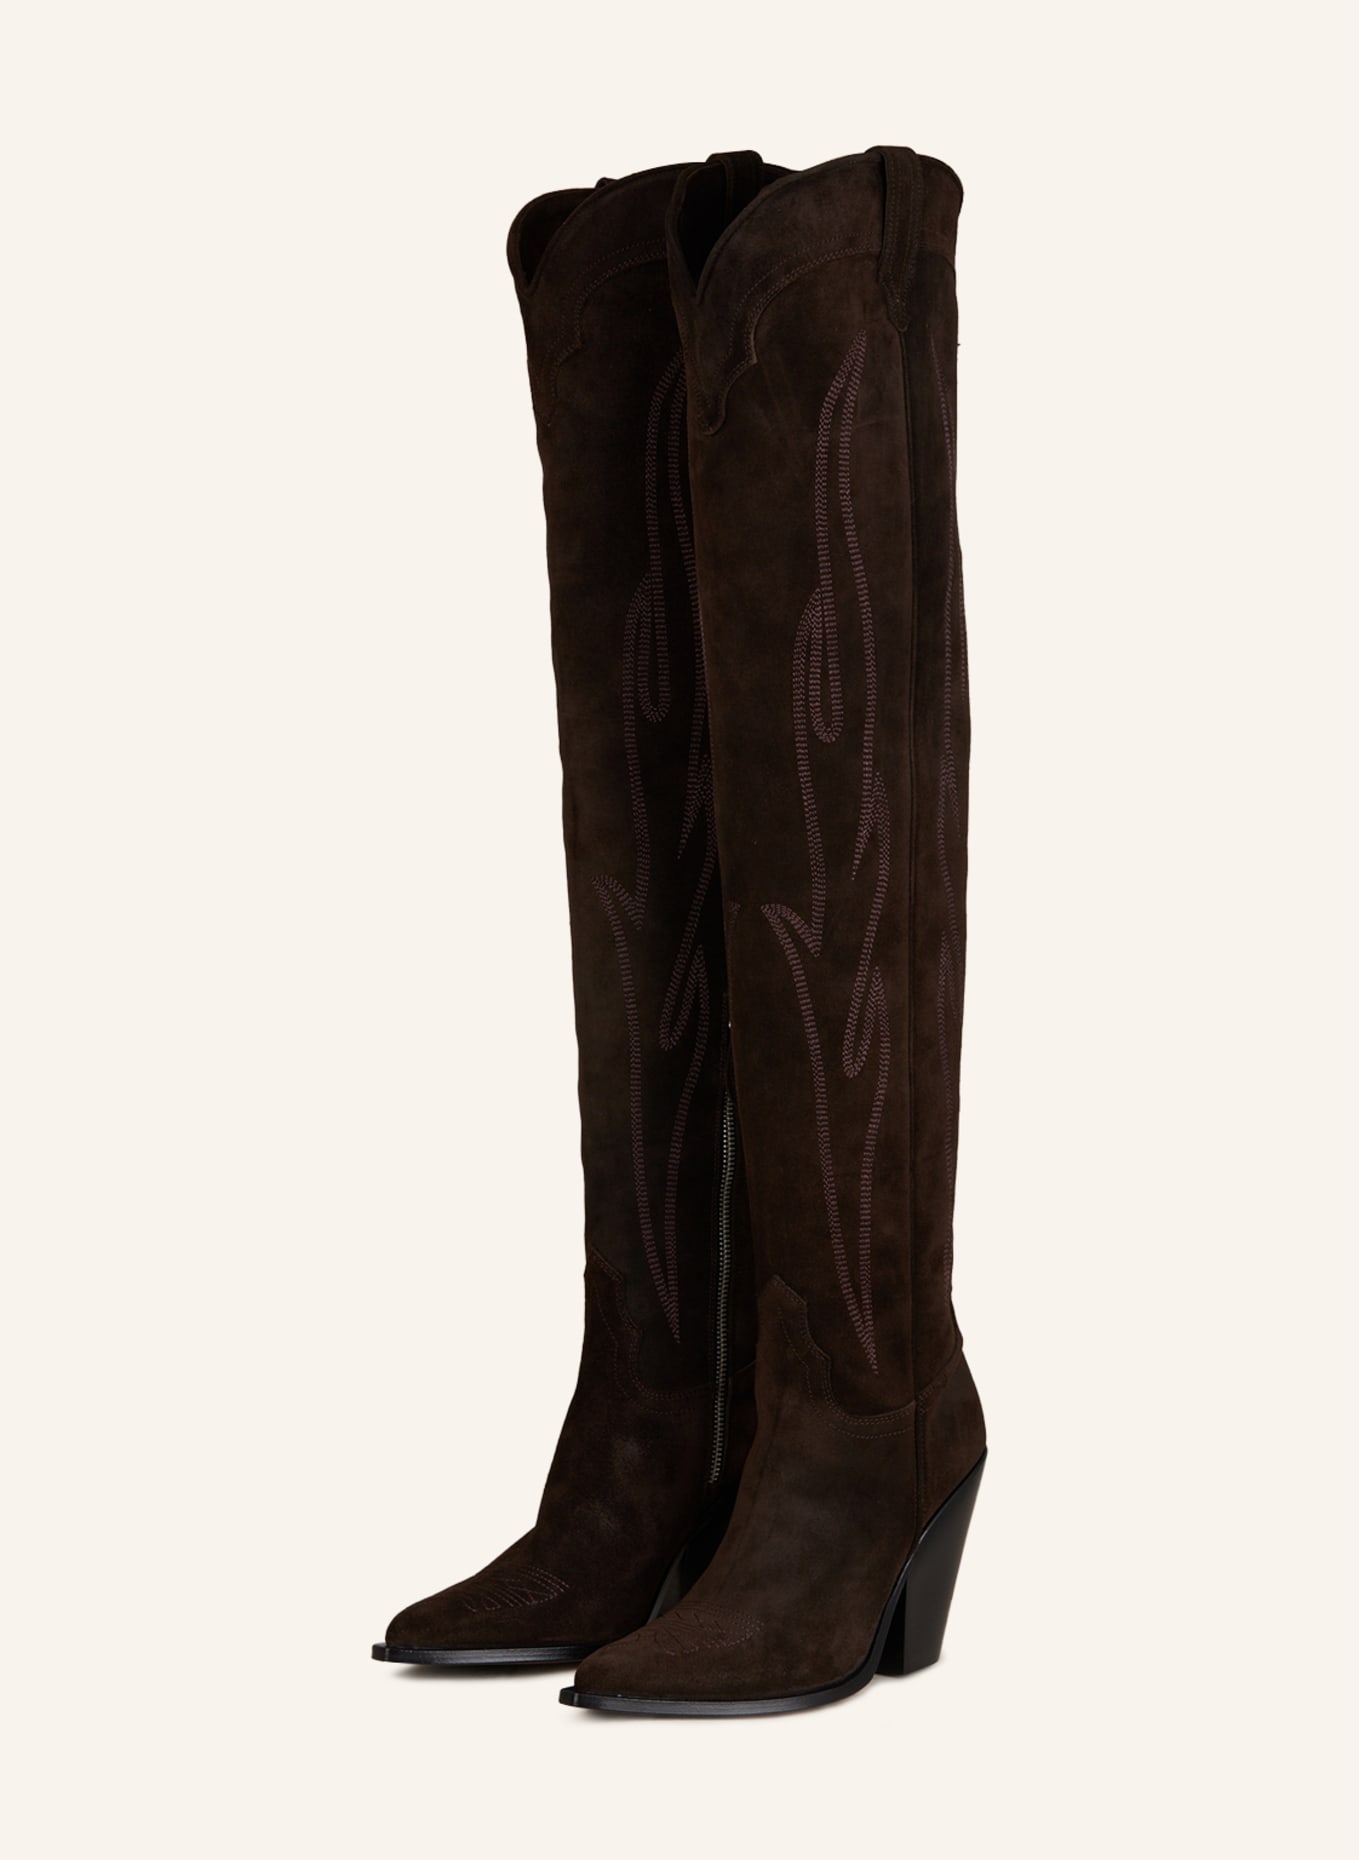 SONORA Overknee-Stiefel HERMOSA, Farbe: DUNKELBRAUN (Bild 1)